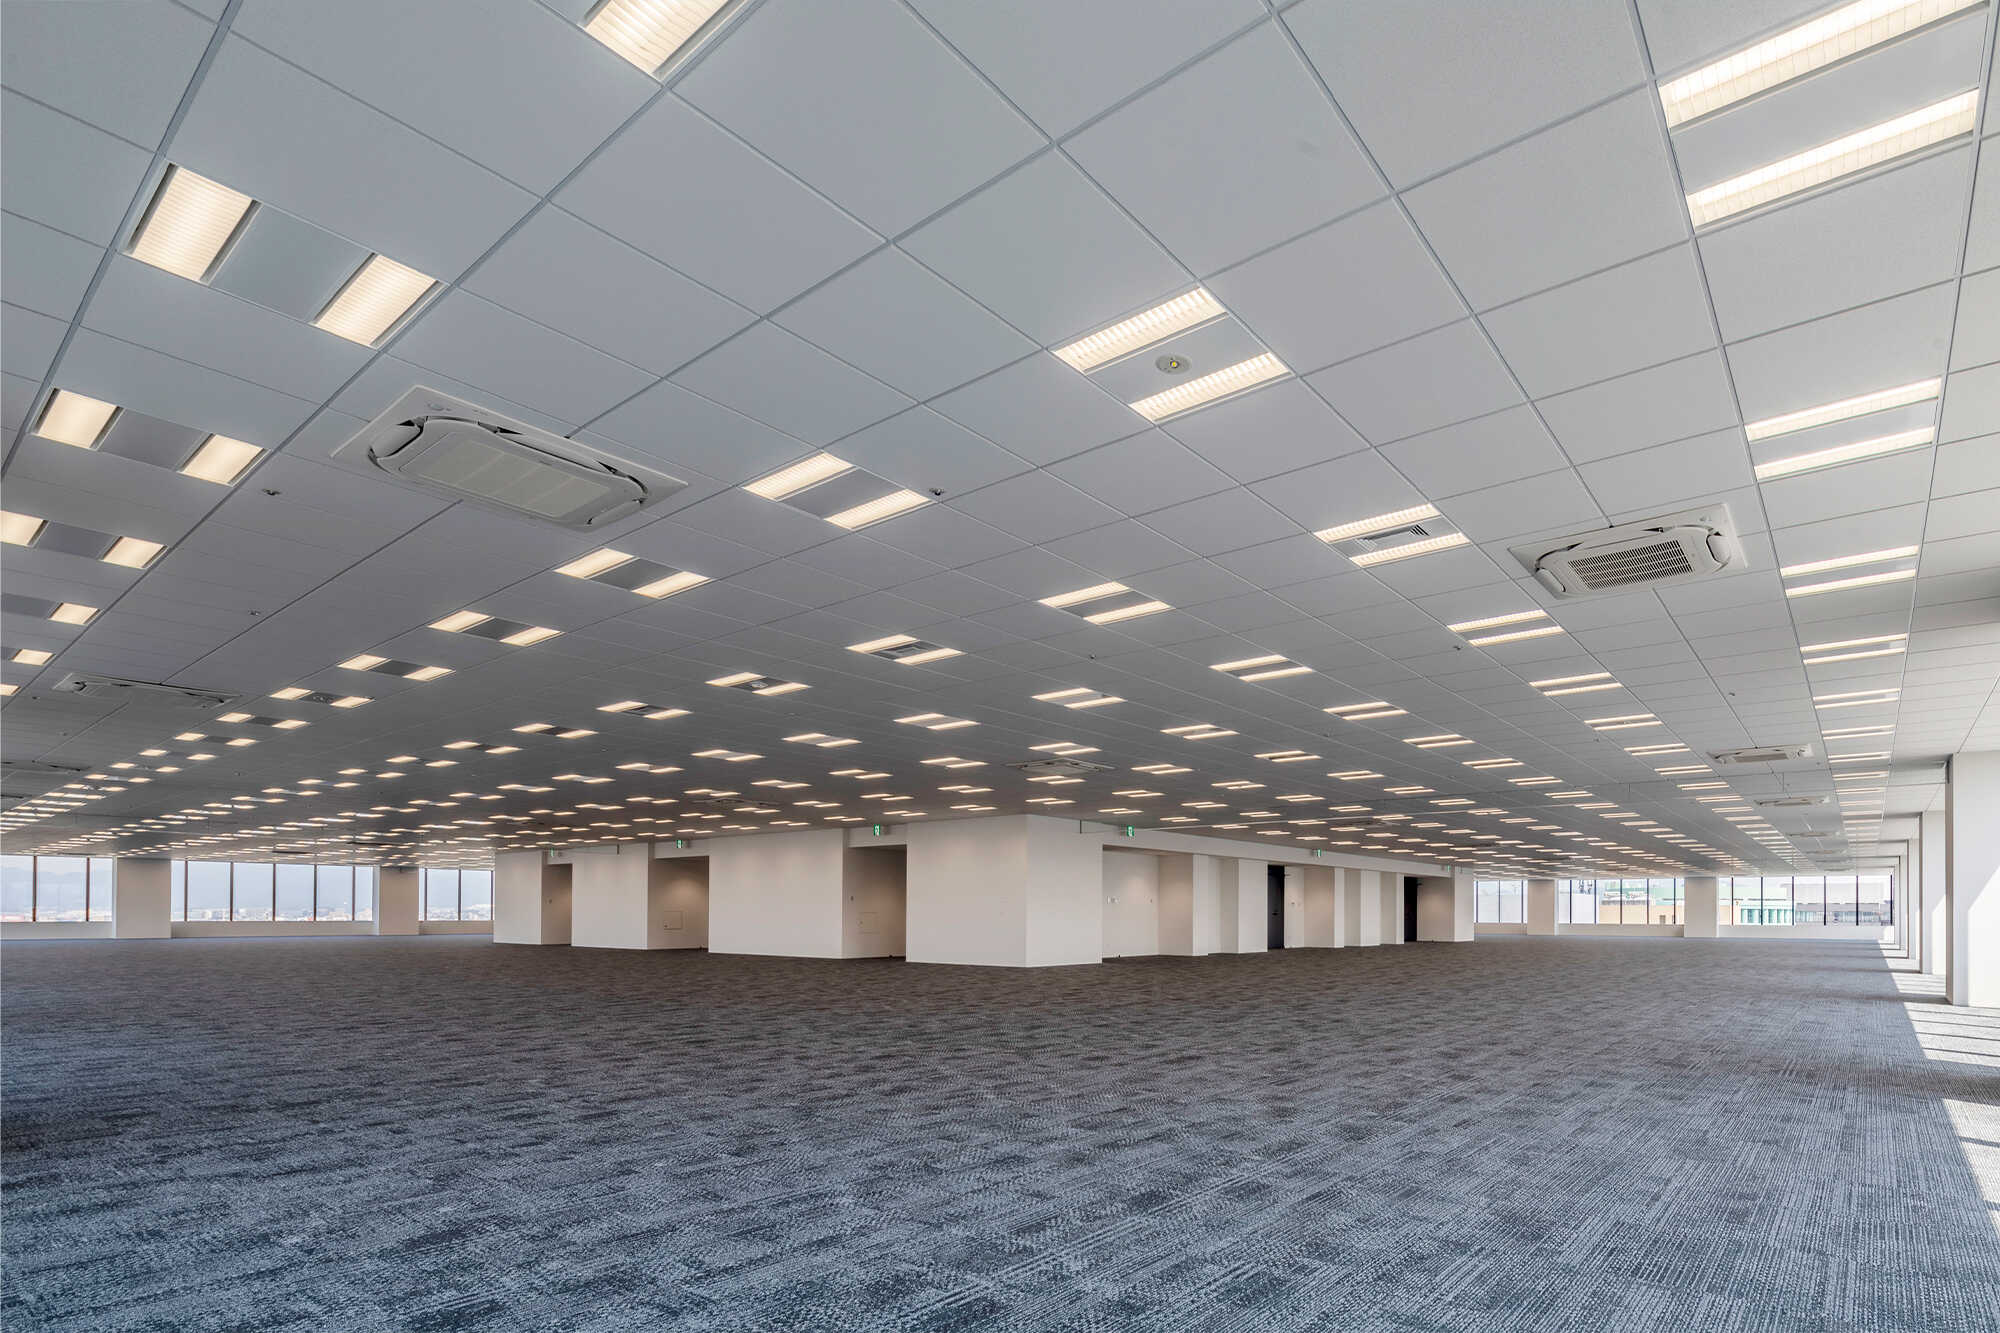 1フロア680坪超、エリア最大級の360度開かれたオフィス空間